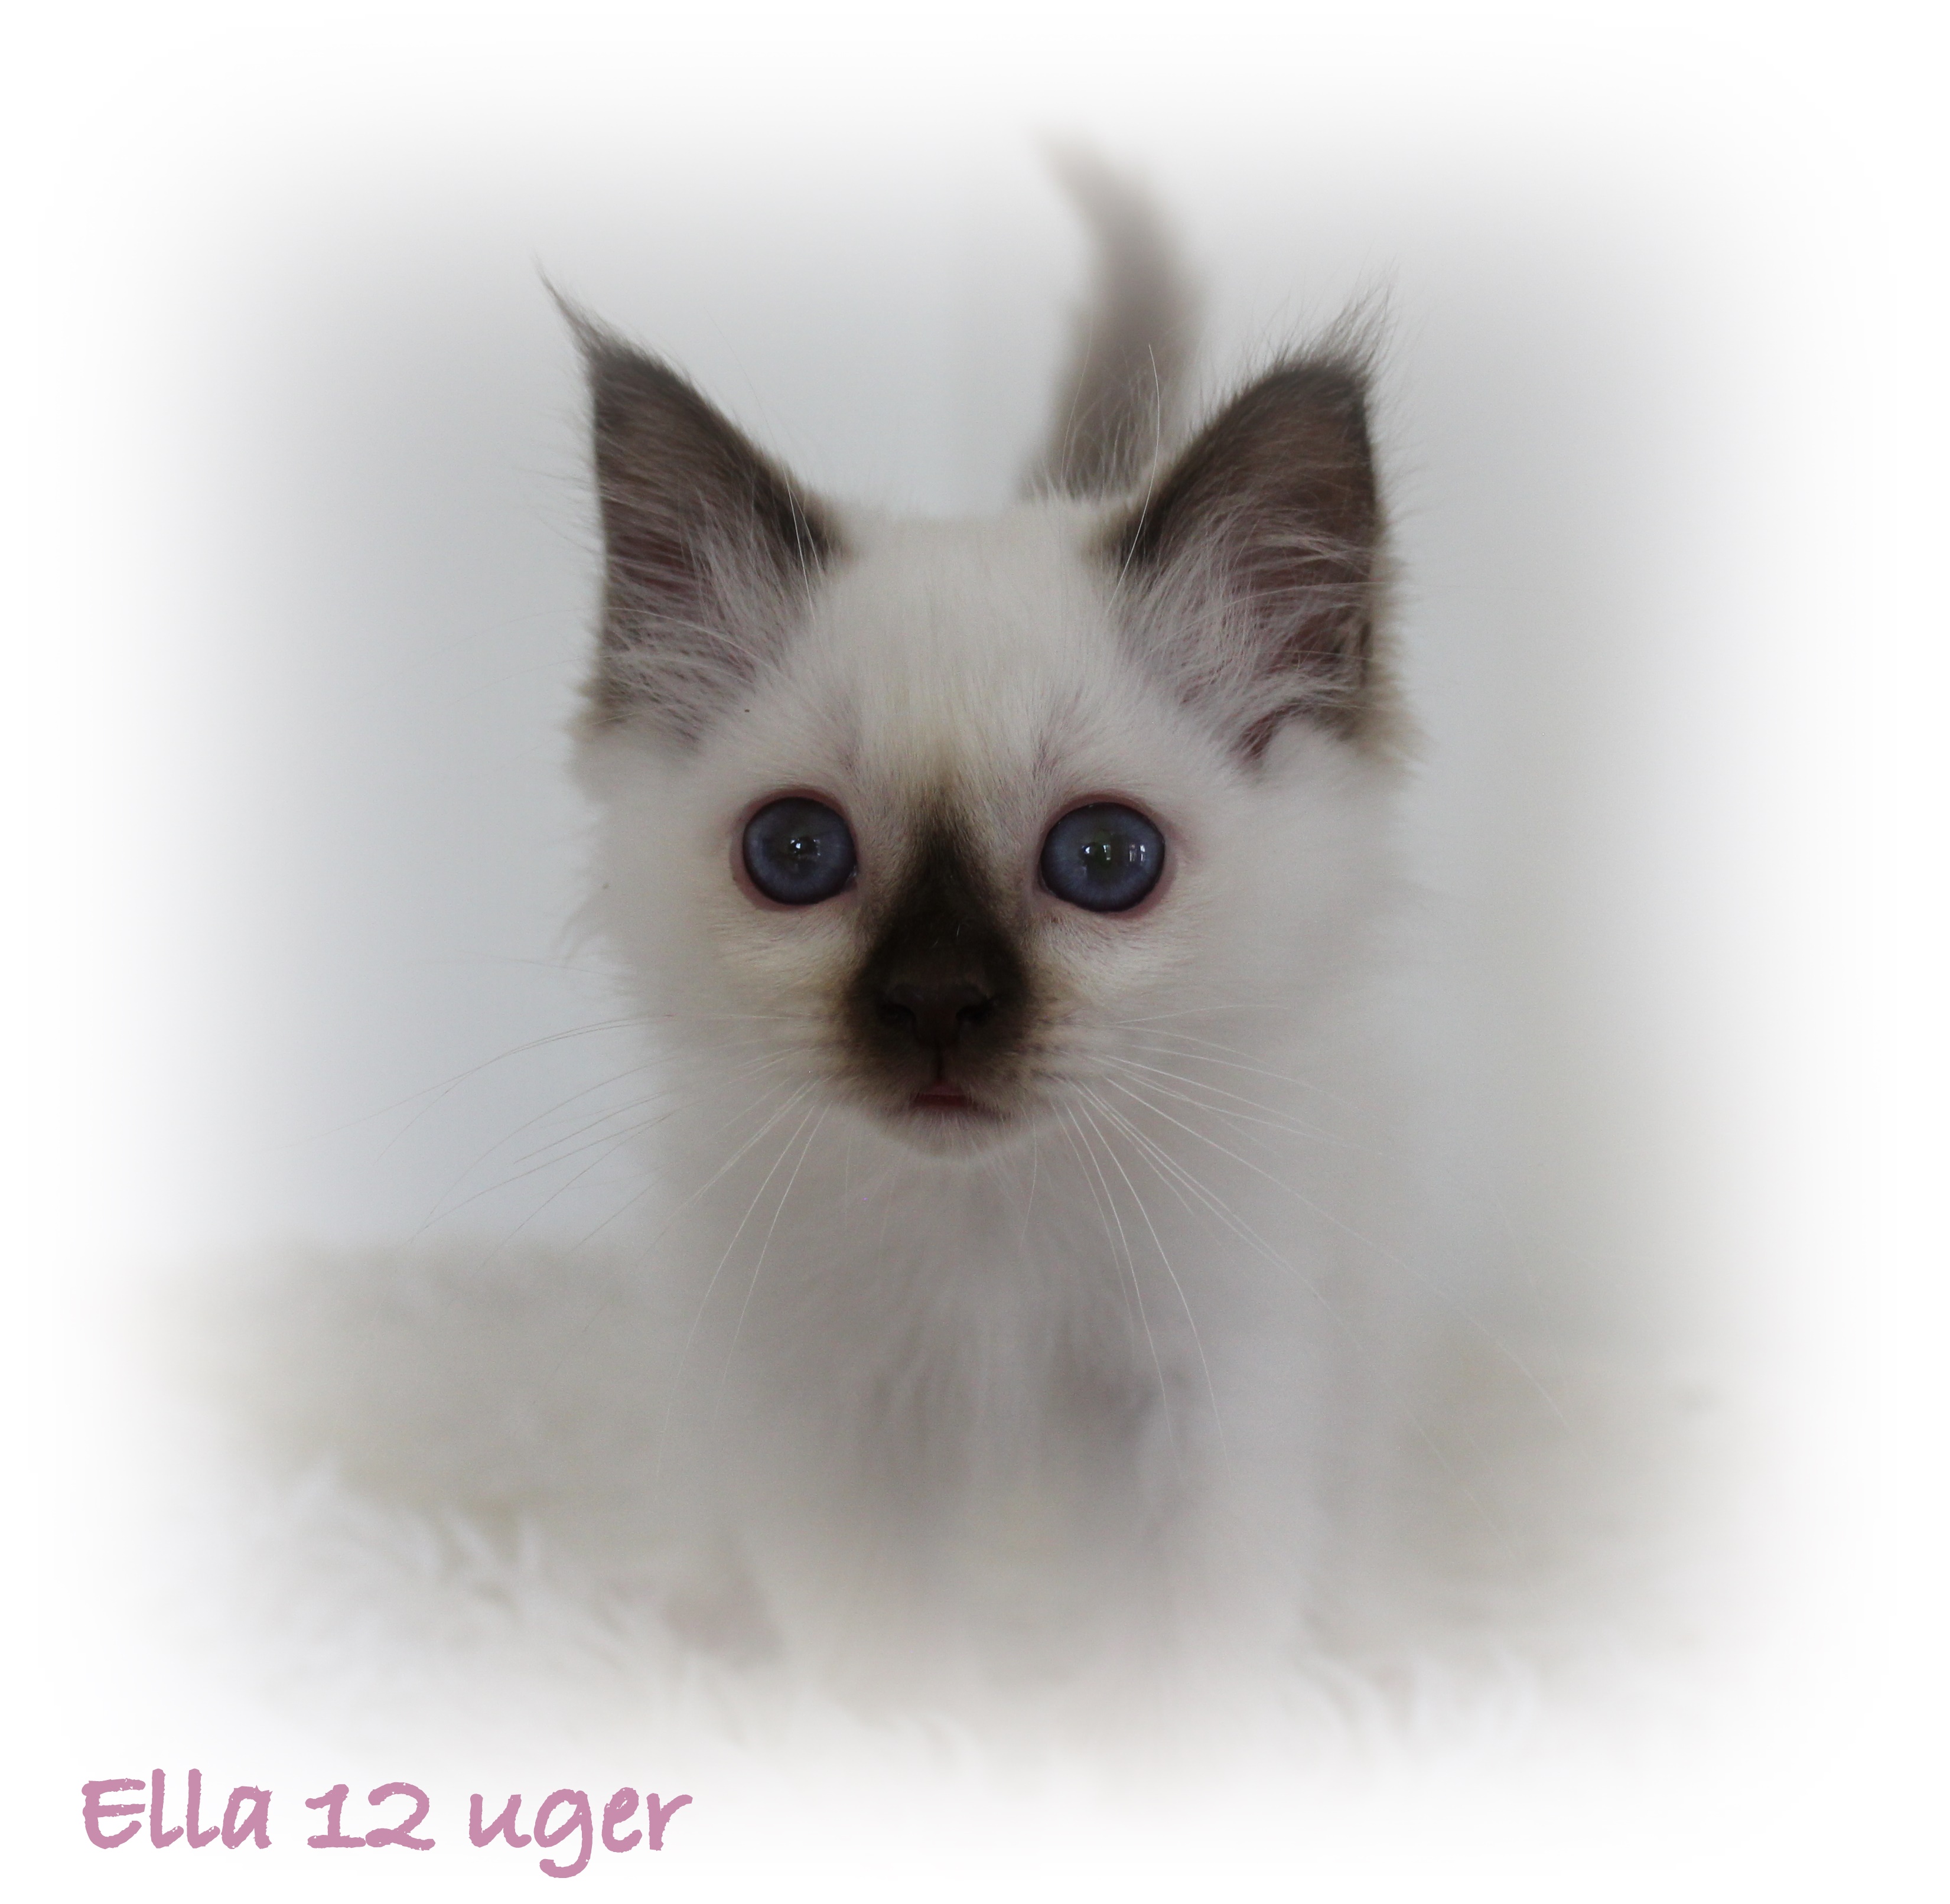 12 uger Ella (2)